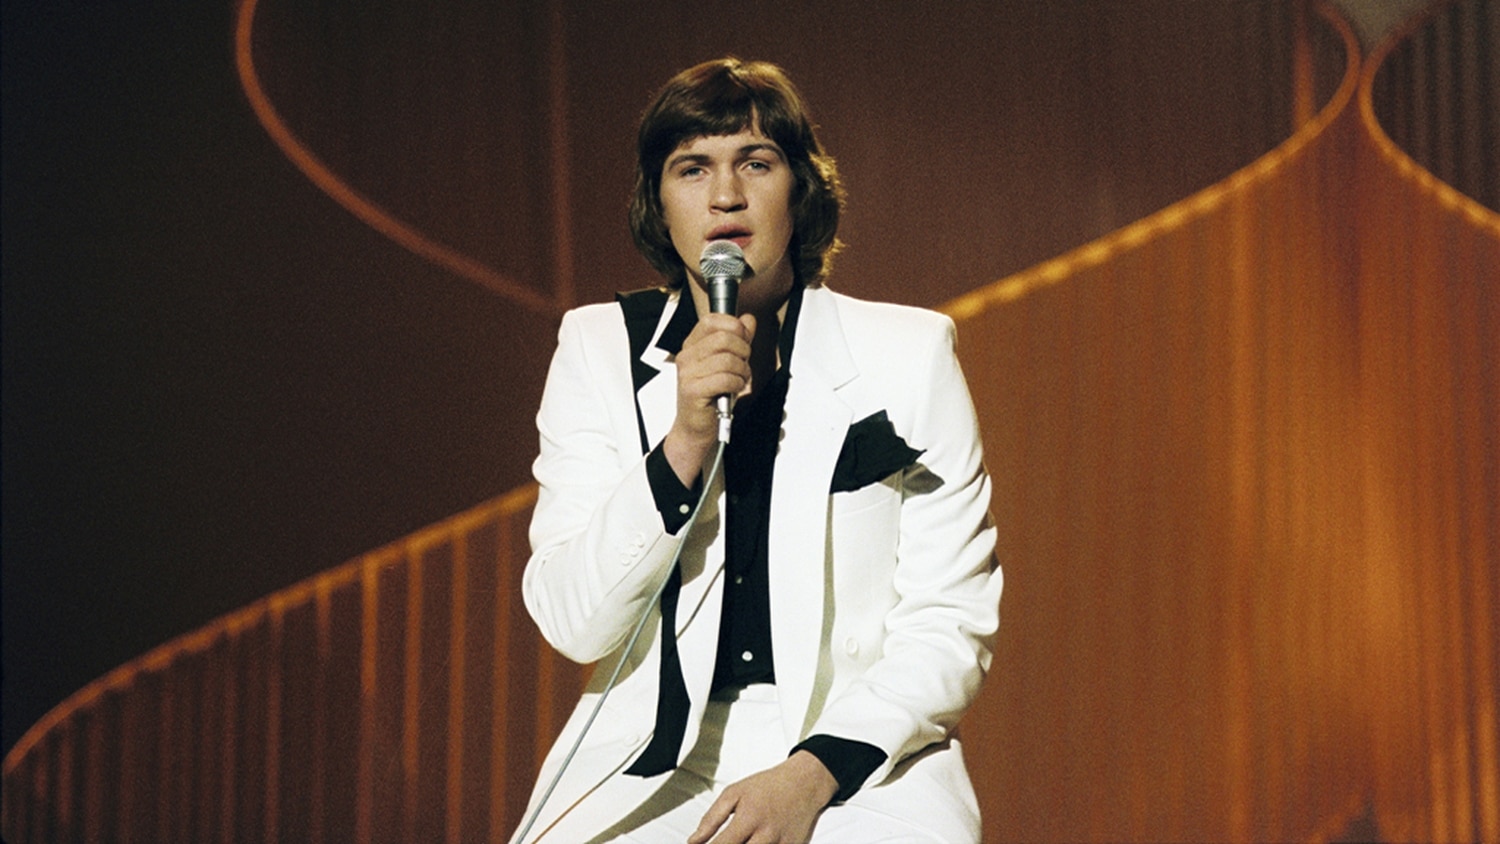 Johnny Logan, a Whats Another Year című dal előadója, az 1980-as Eurovíziós Dalfesztivál győztese - az RTÉ Archives fotója